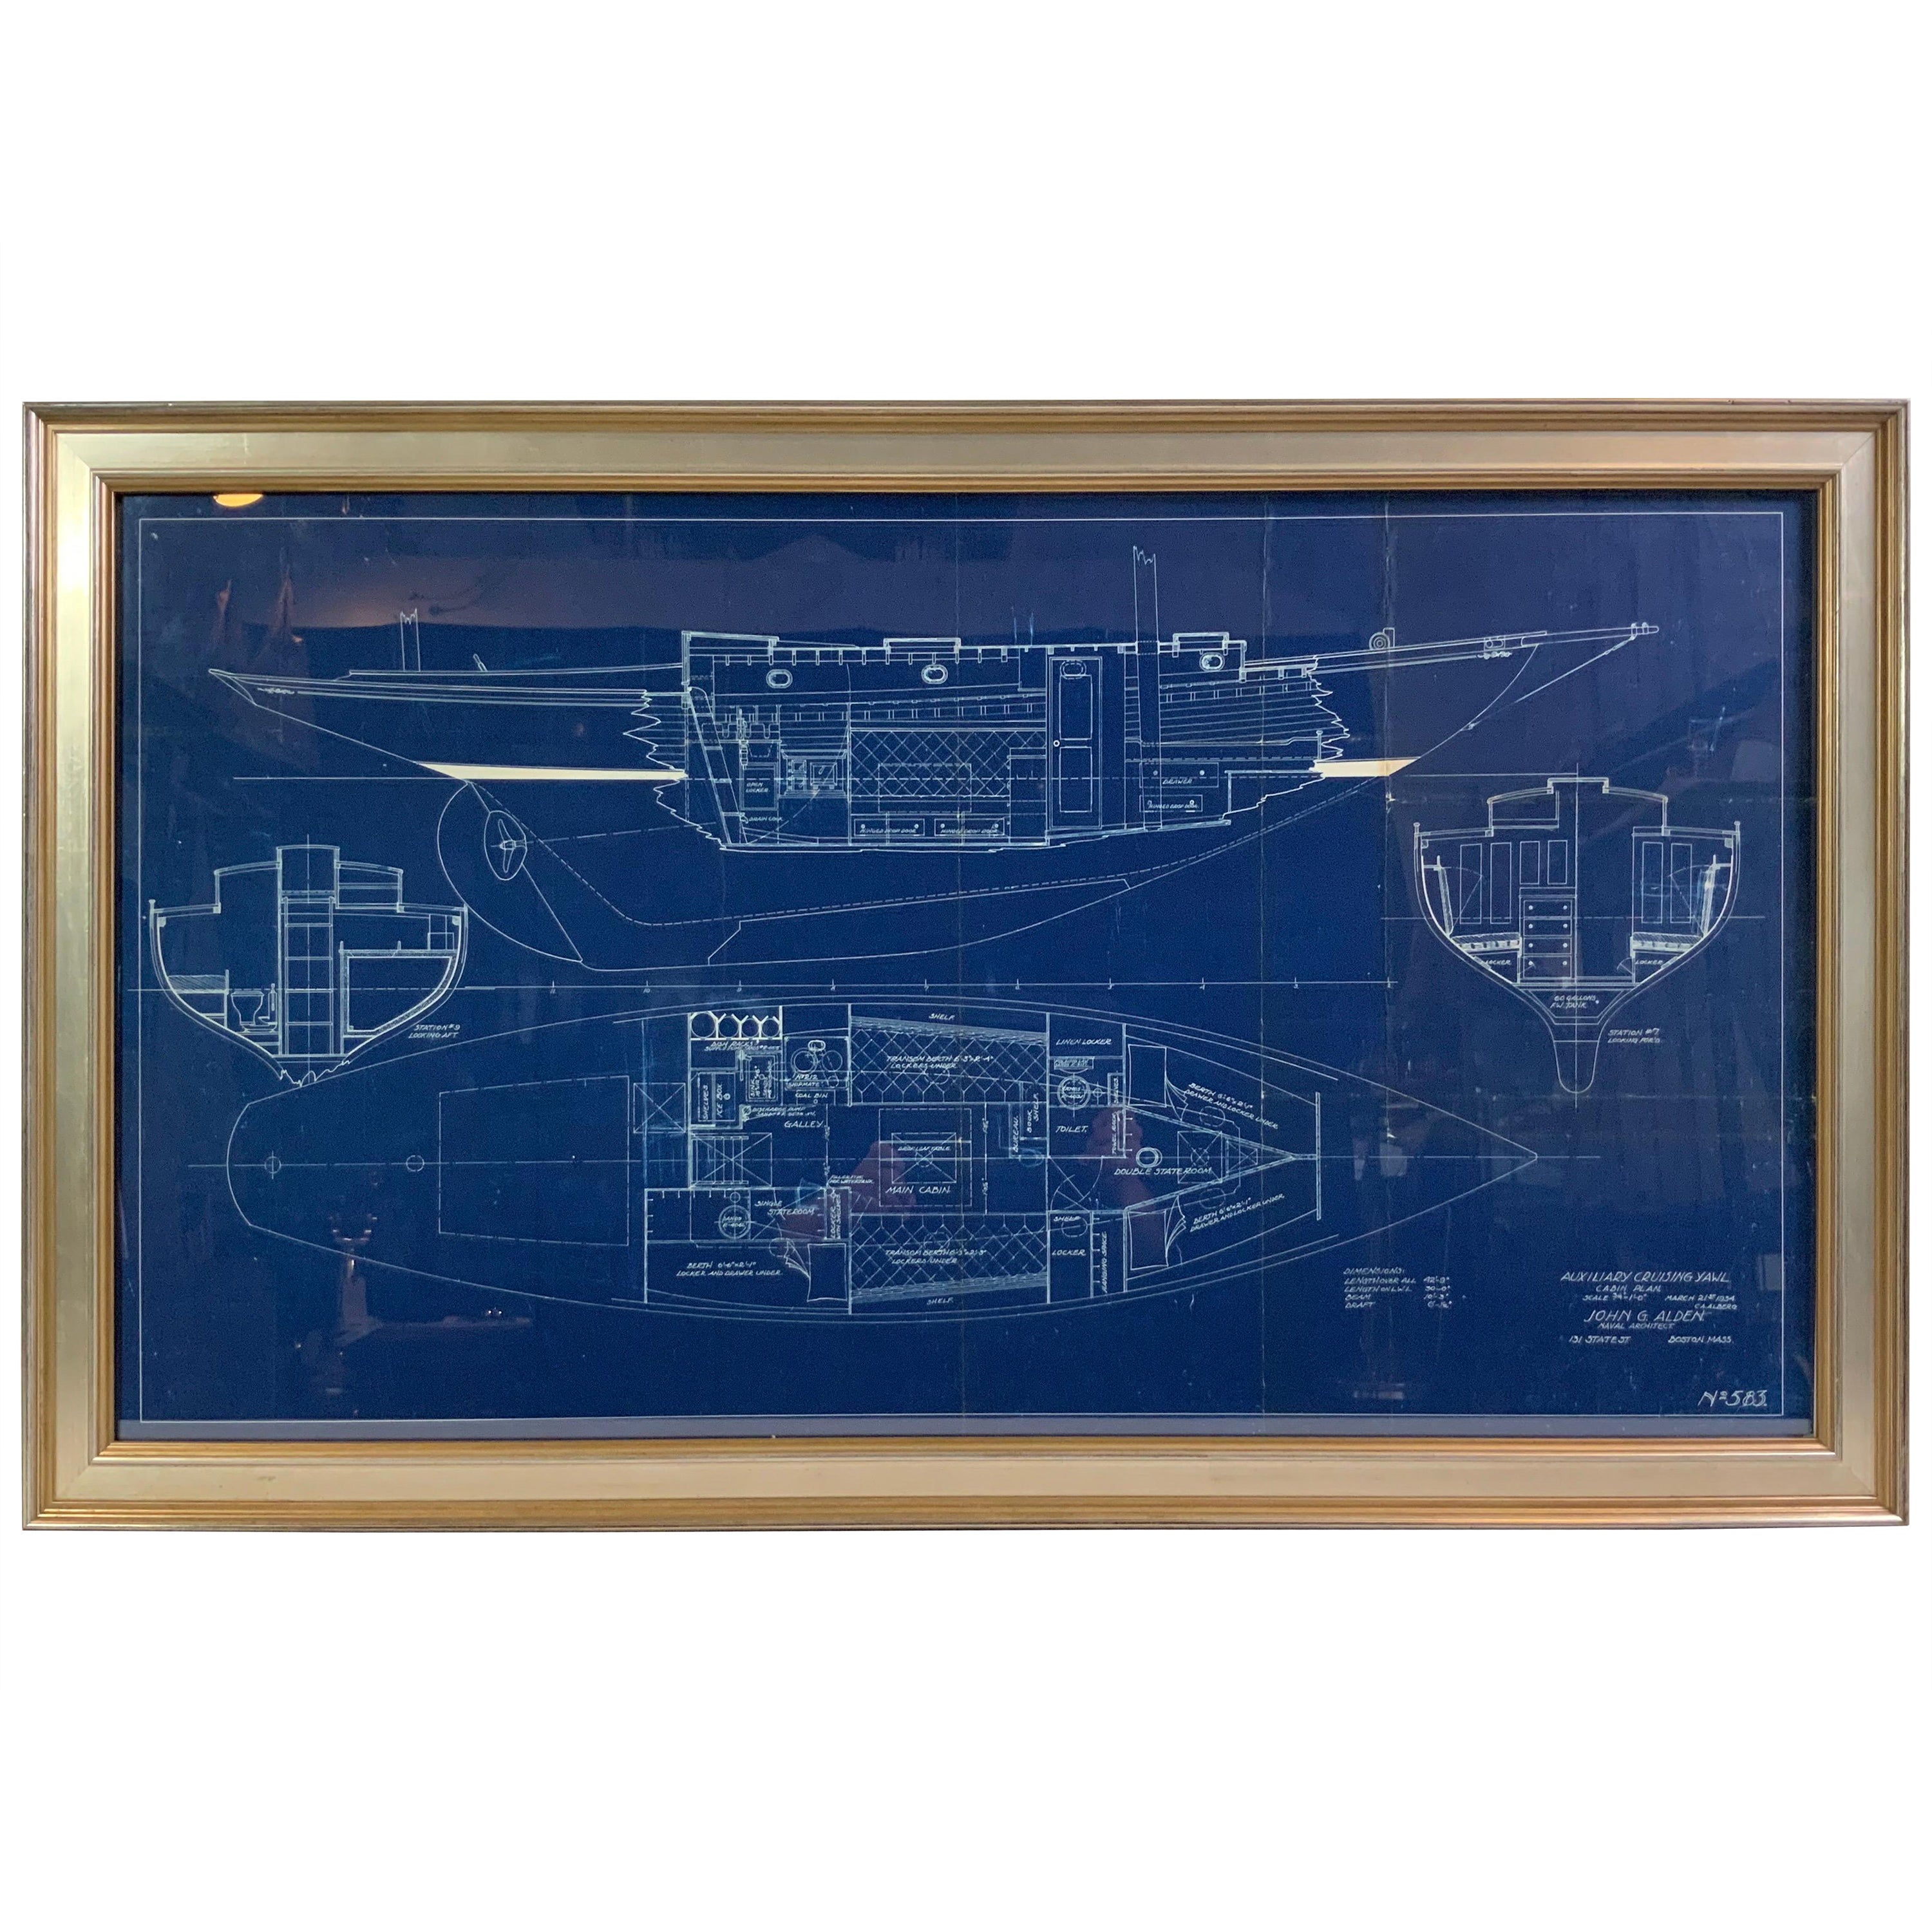 John Alden - Blueprint n° 583 d'un chalumeau de croisement auxiliaire